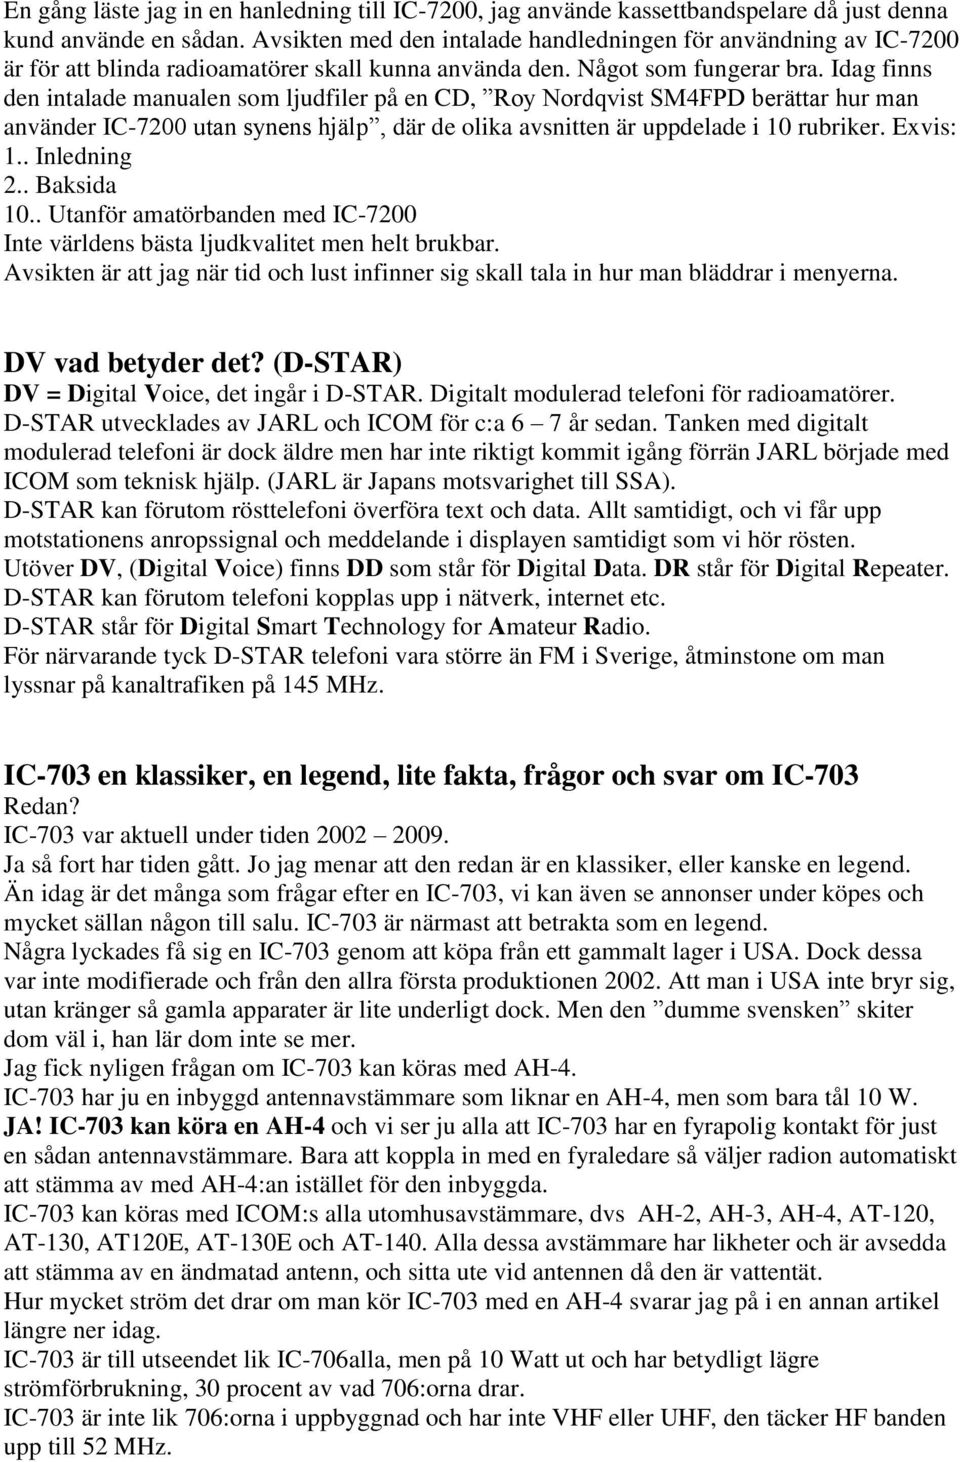 Idag finns den intalade manualen som ljudfiler på en CD, Roy Nordqvist SM4FPD berättar hur man använder IC-7200 utan synens hjälp, där de olika avsnitten är uppdelade i 10 rubriker. Exvis: 1.